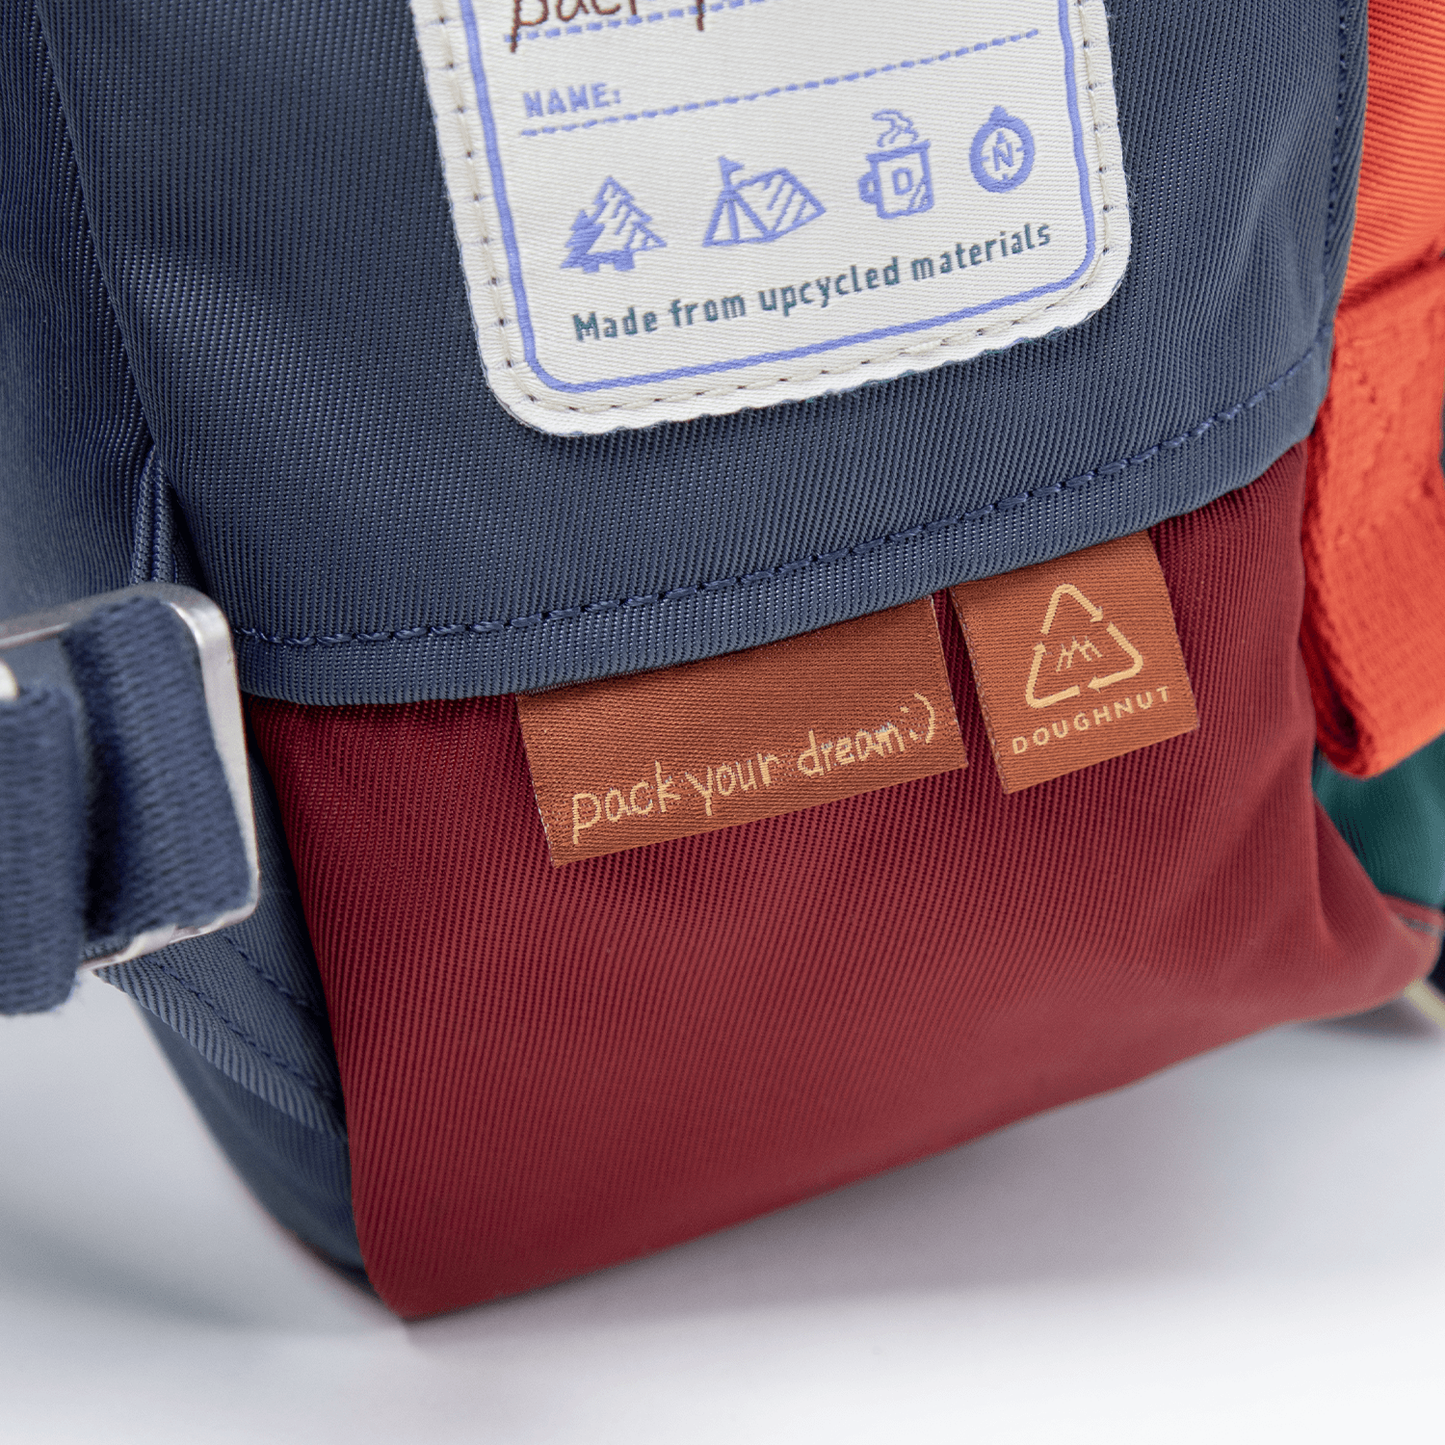 Macaroon Happy Camper Series Backpack